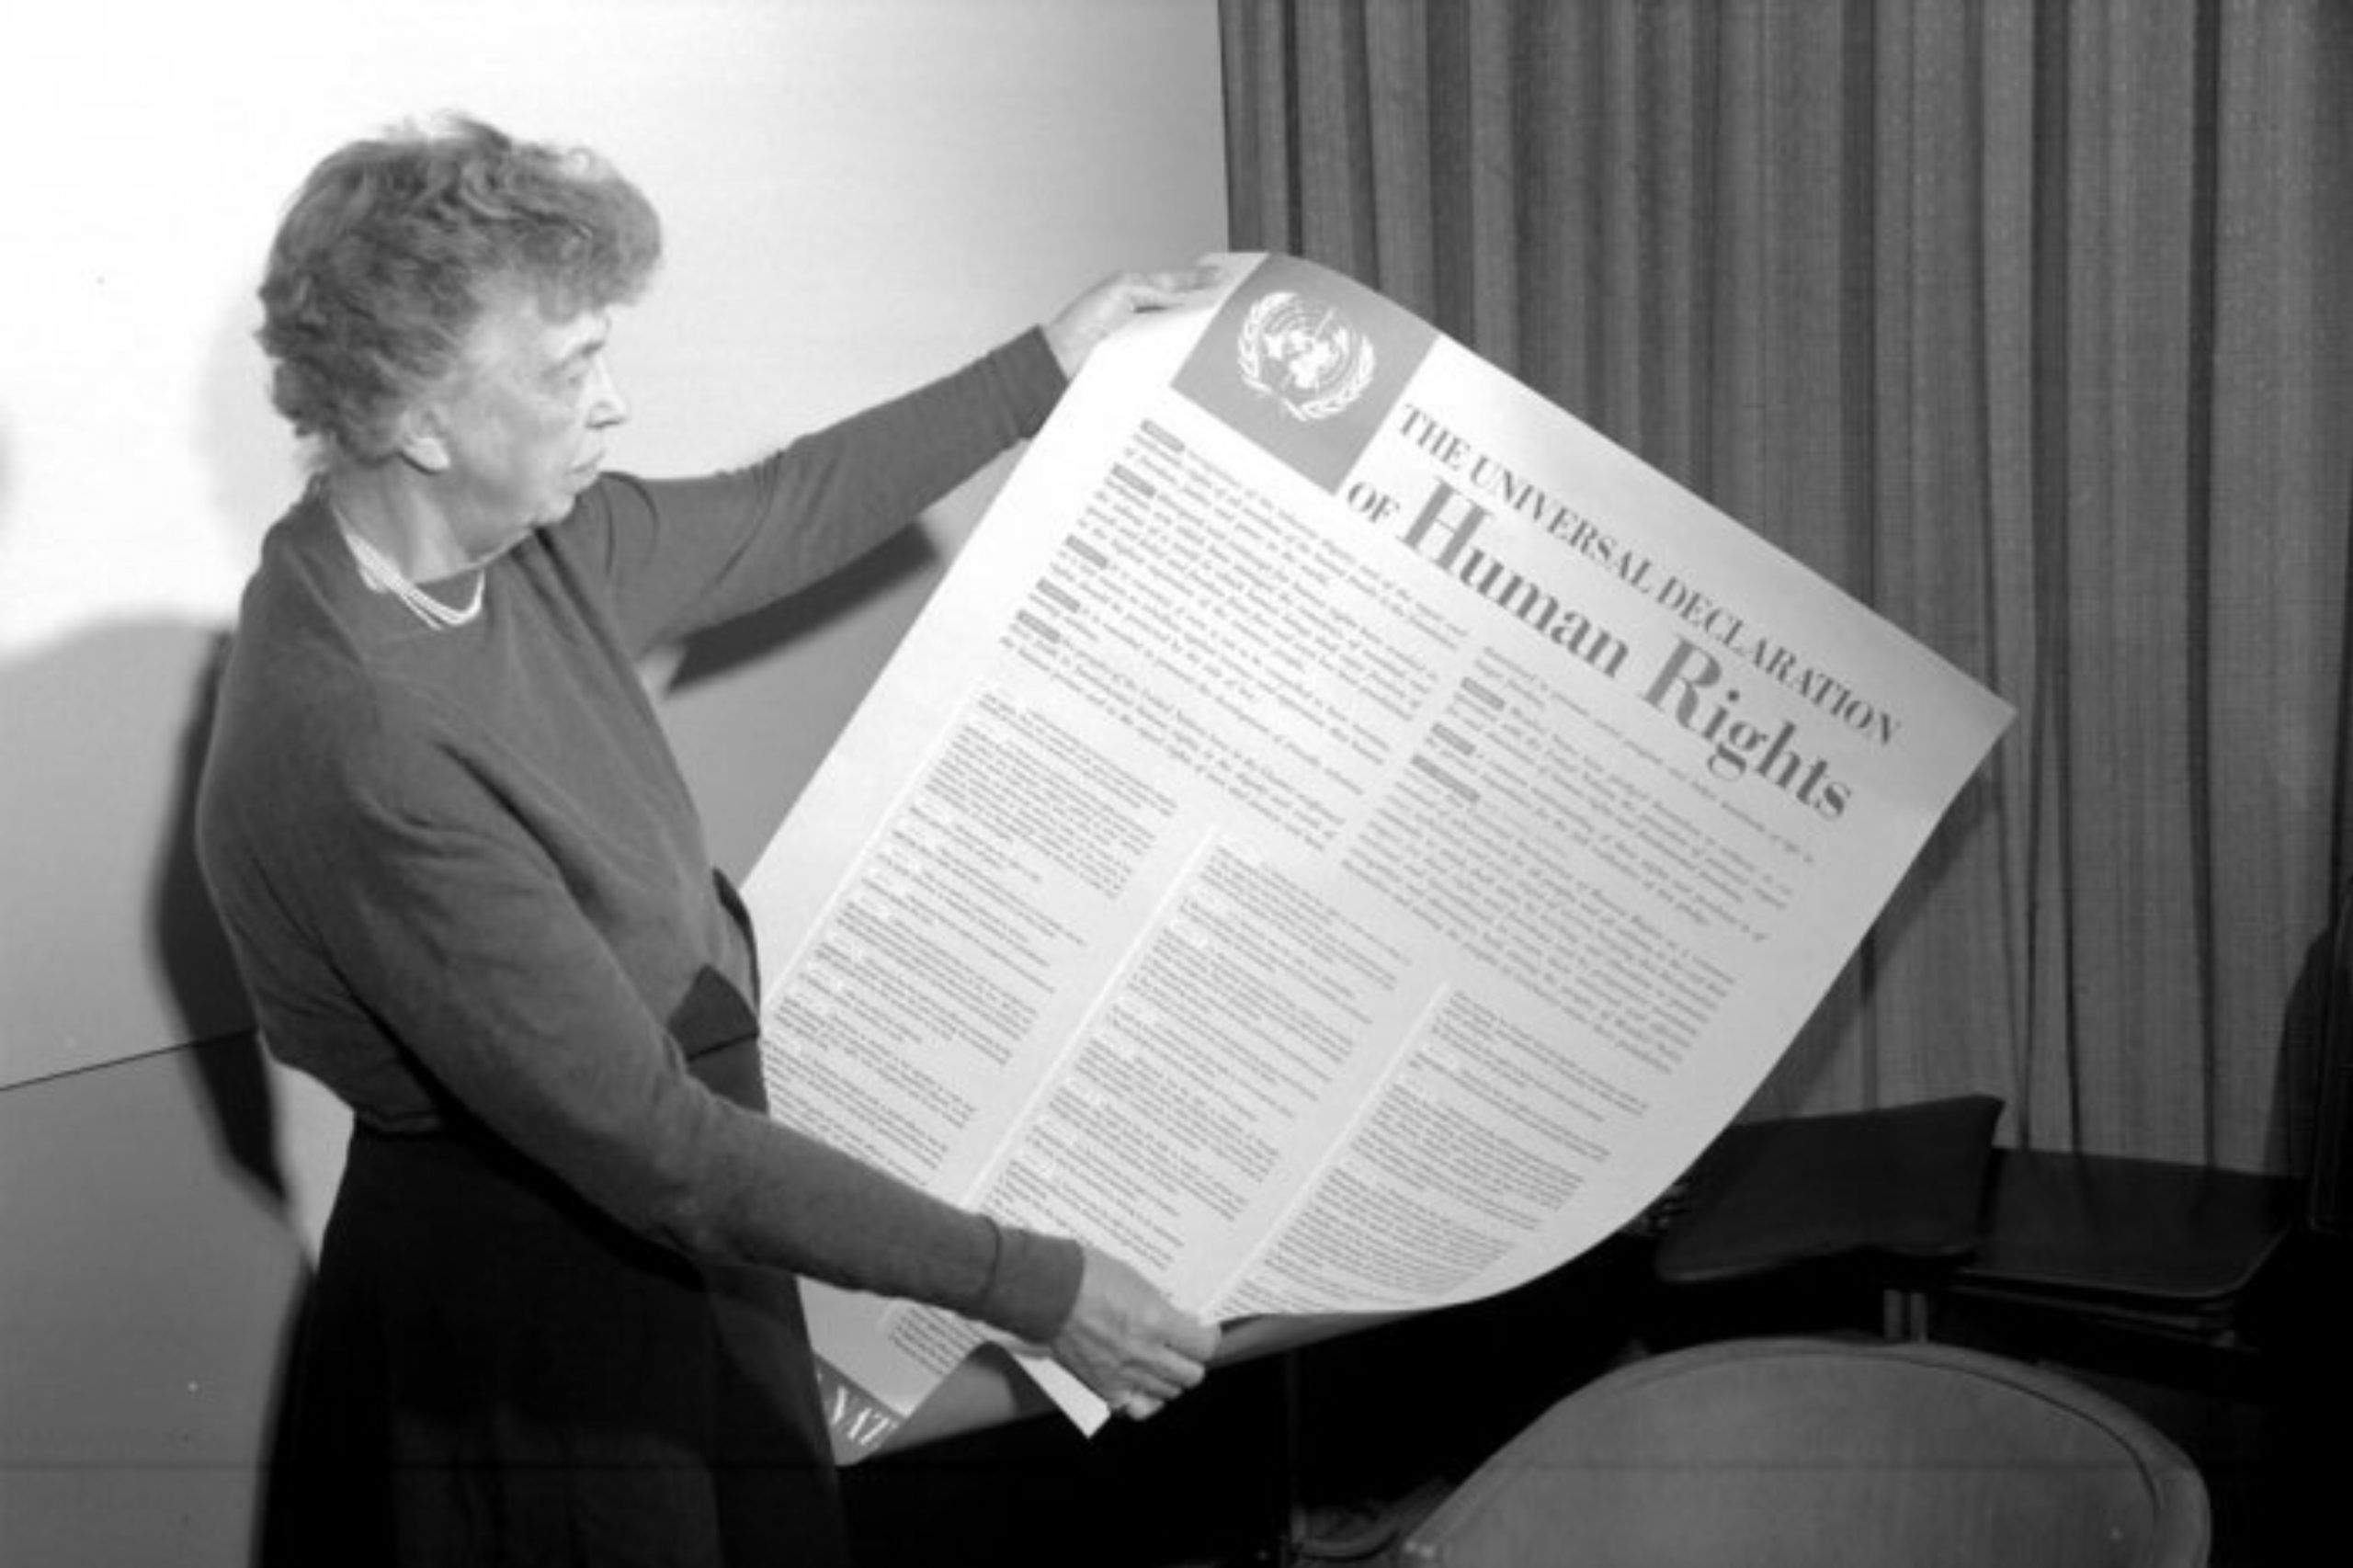 សេចក្ដីប្រកាសជាសកលស្ដីពីសិទ្ធិមនុស្ស (The Universal Declaration of Human Rights)